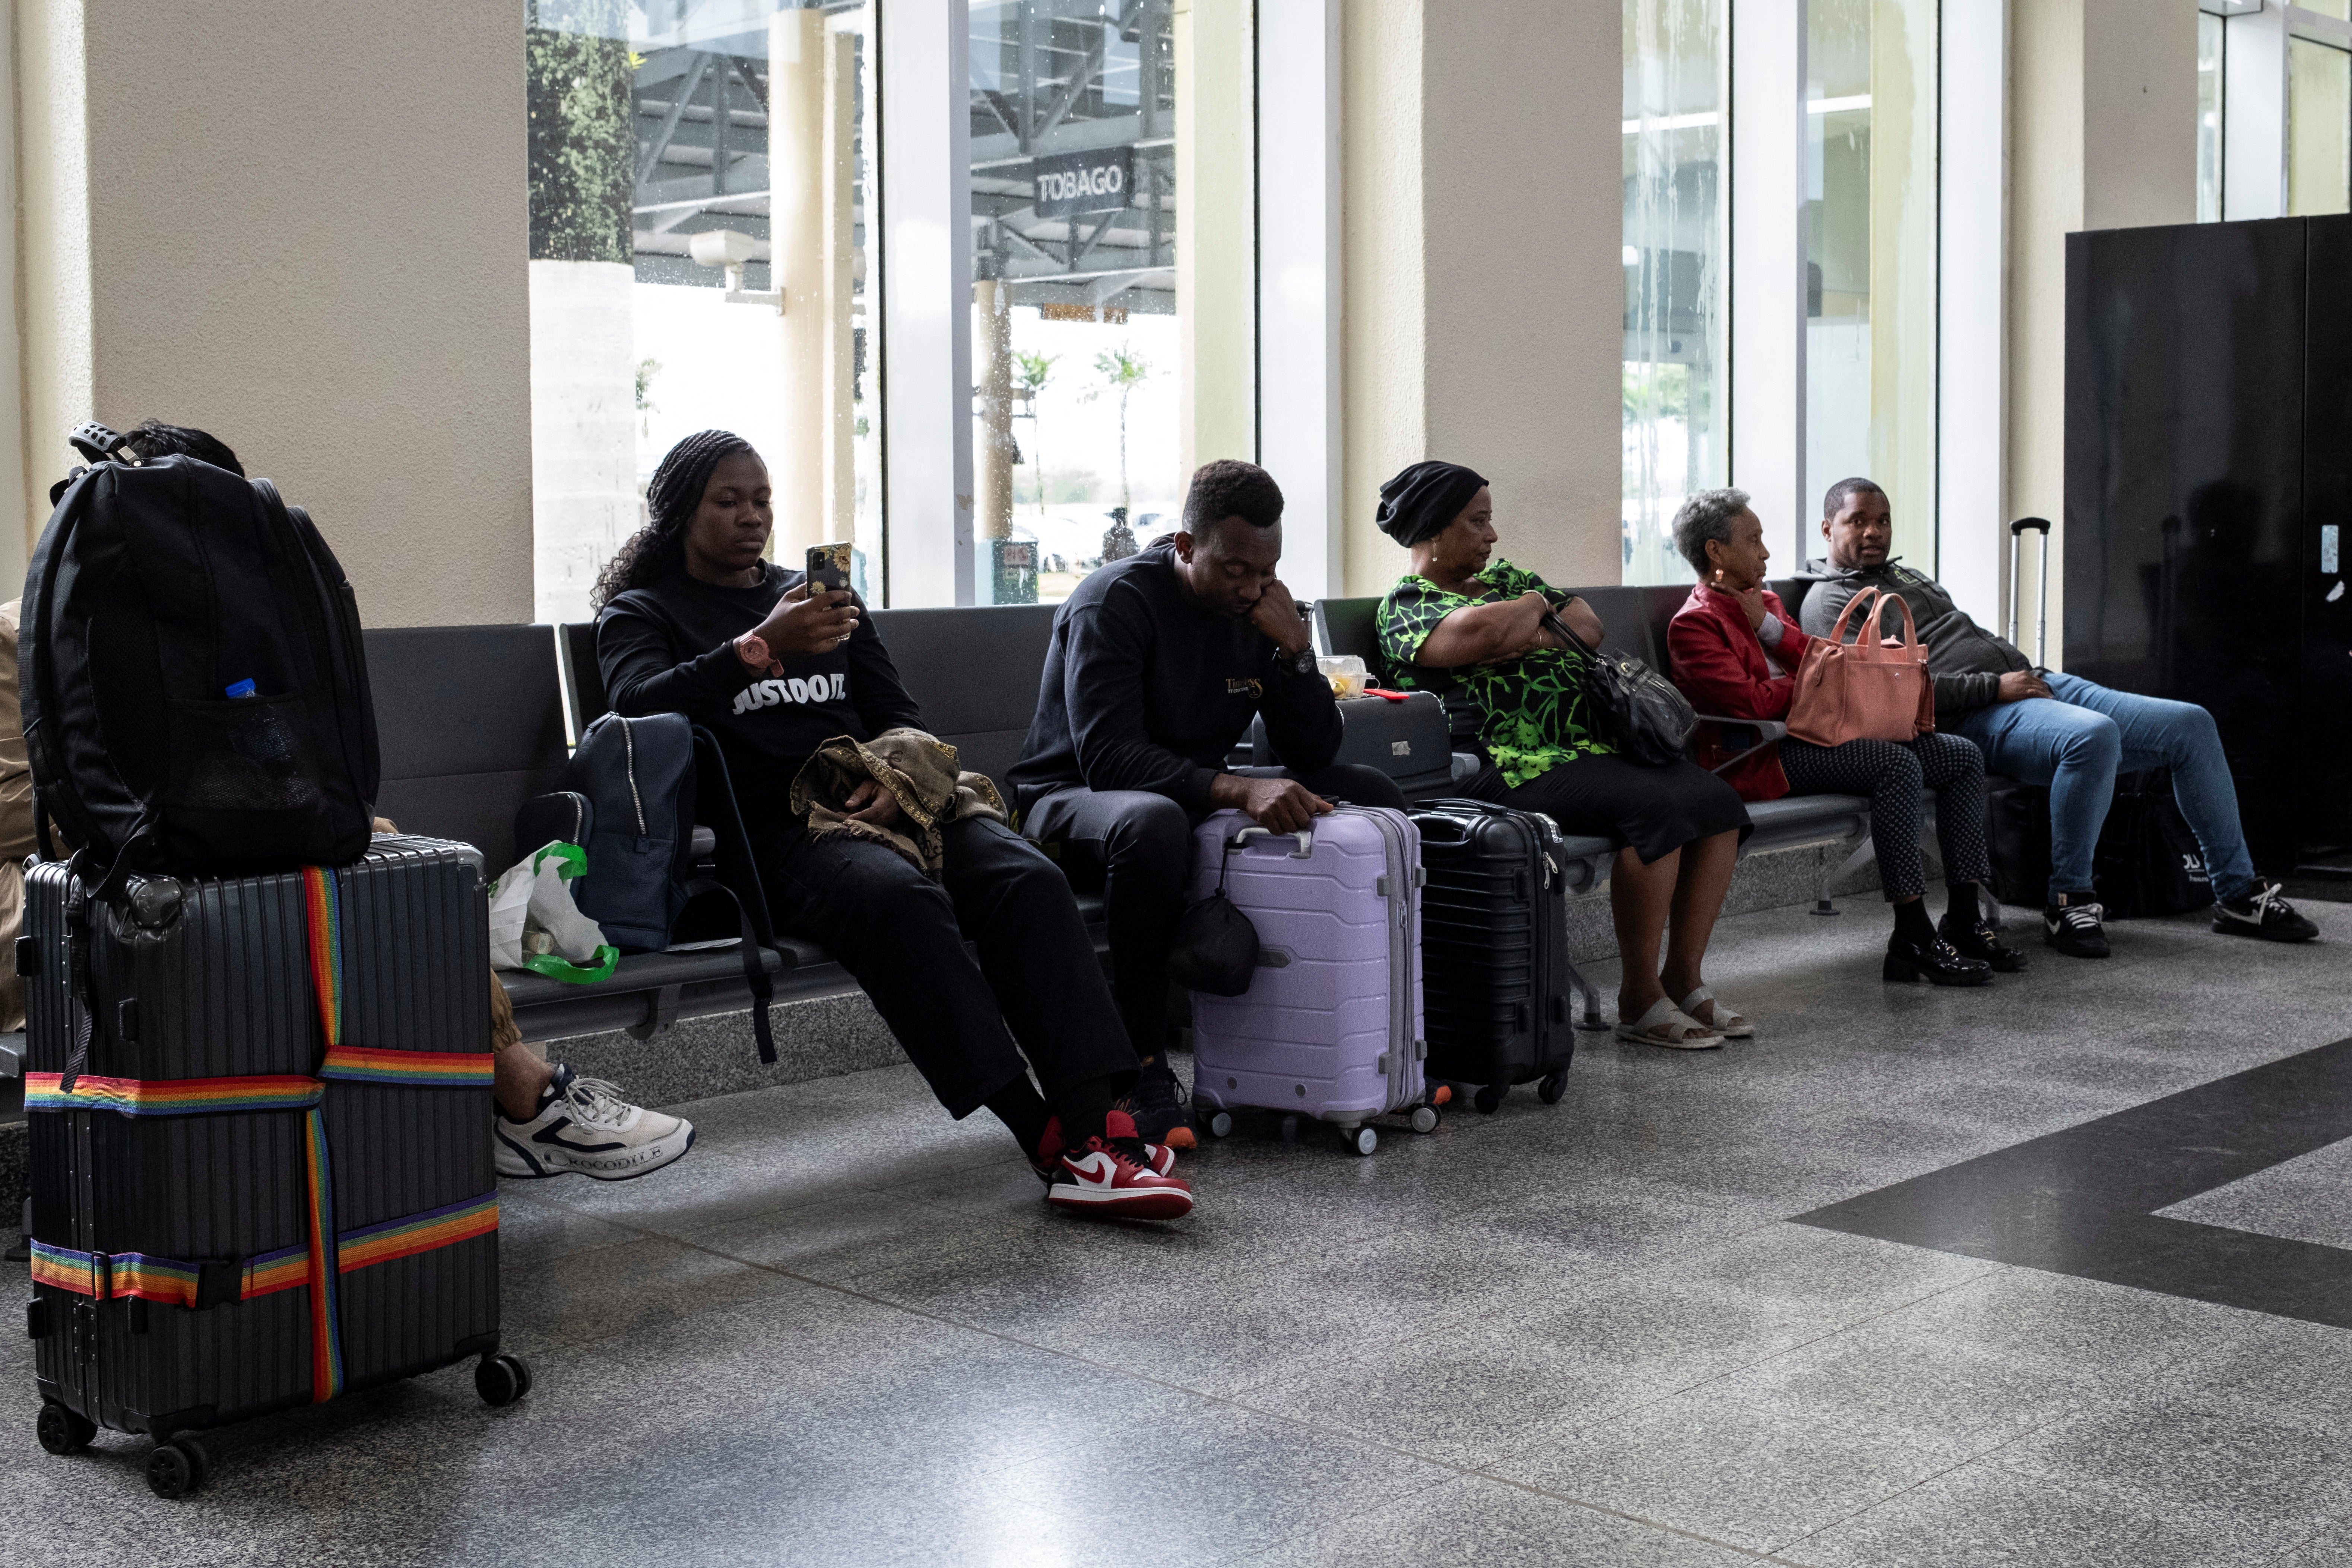 الركاب ينتظرون في مطار بياركو الدولي حيث تأخرت الرحلات الجوية وأُلغيت بسبب إعصار بيريل